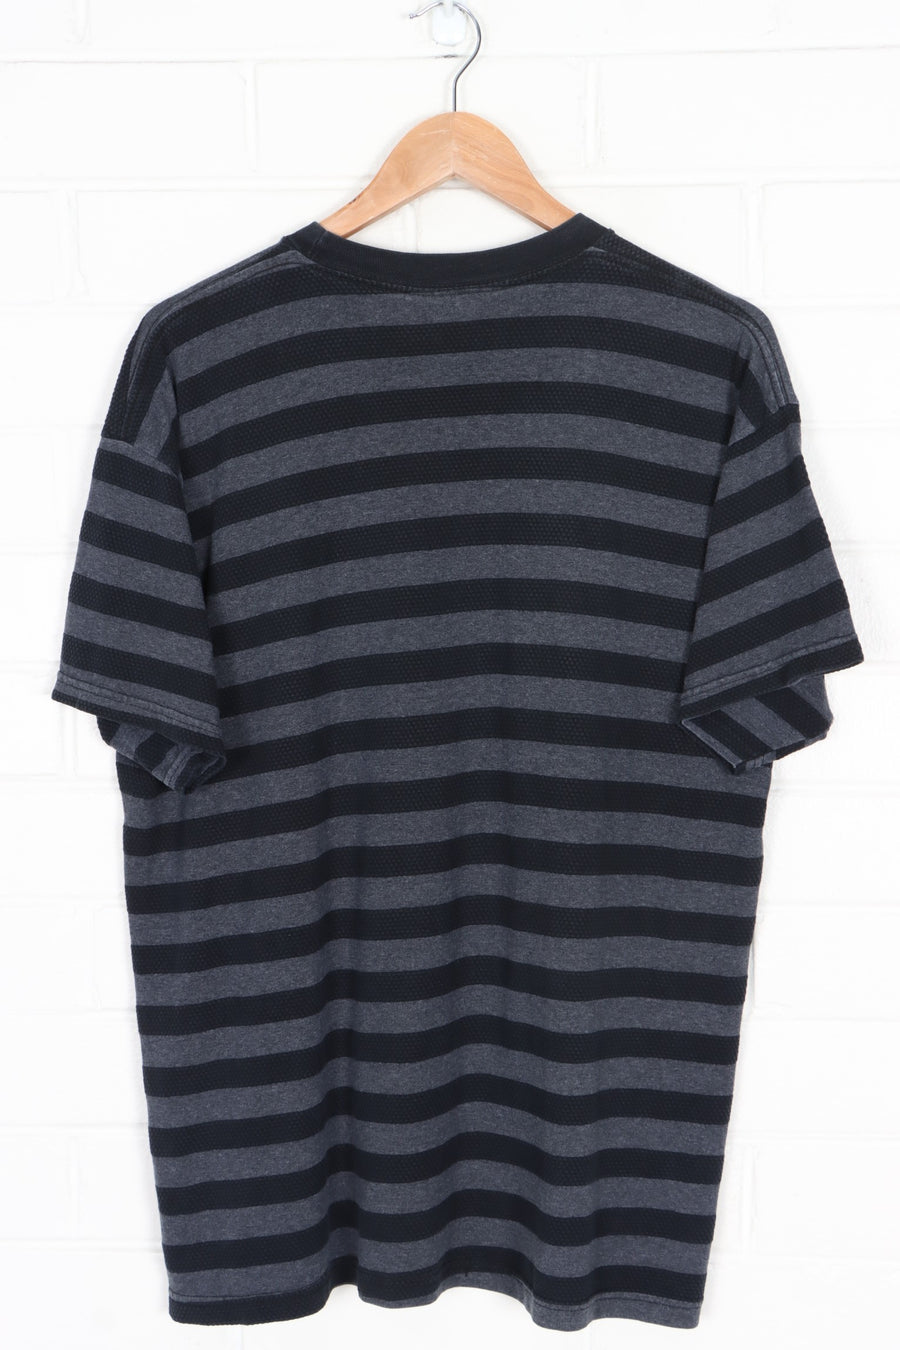 BOOTLEG Tommy Hilfiger Sports Big Box Logo Textured Striped T-Shirt (L)